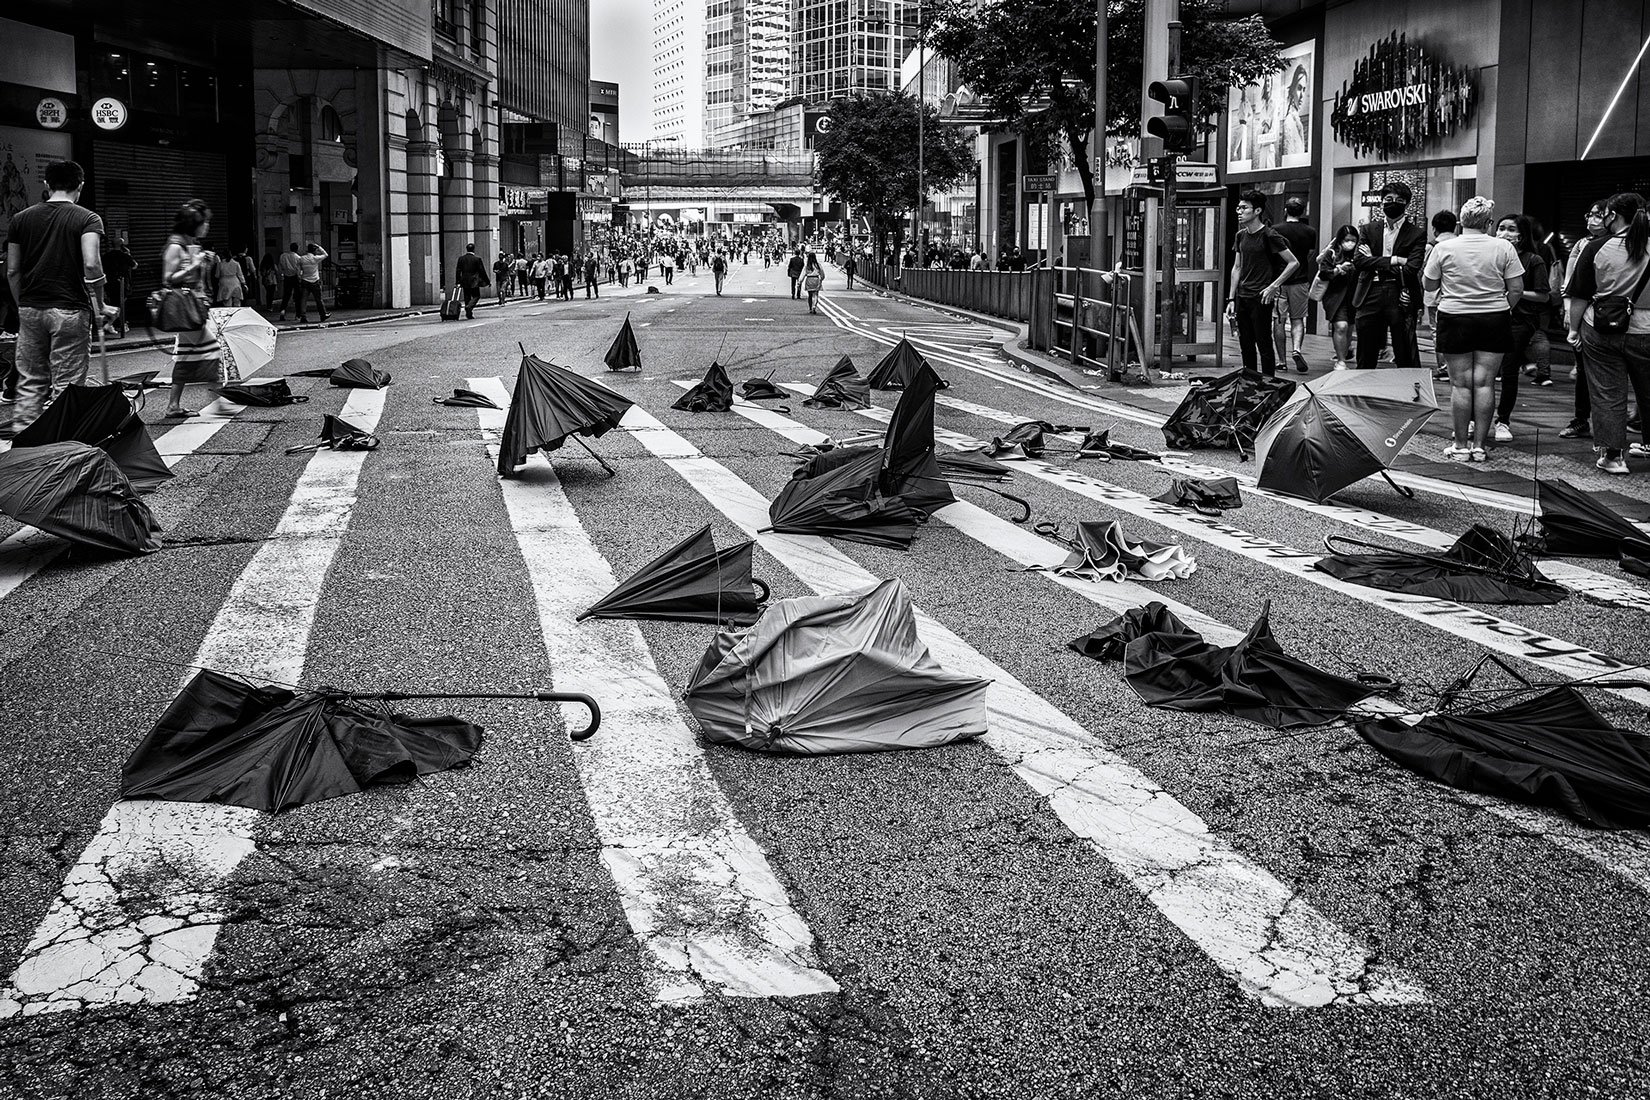 Benny-van-der-Plank-1-Aftermath-Hong-Kong-Protests-2019-S---Benny-van-der-Plank.jpg